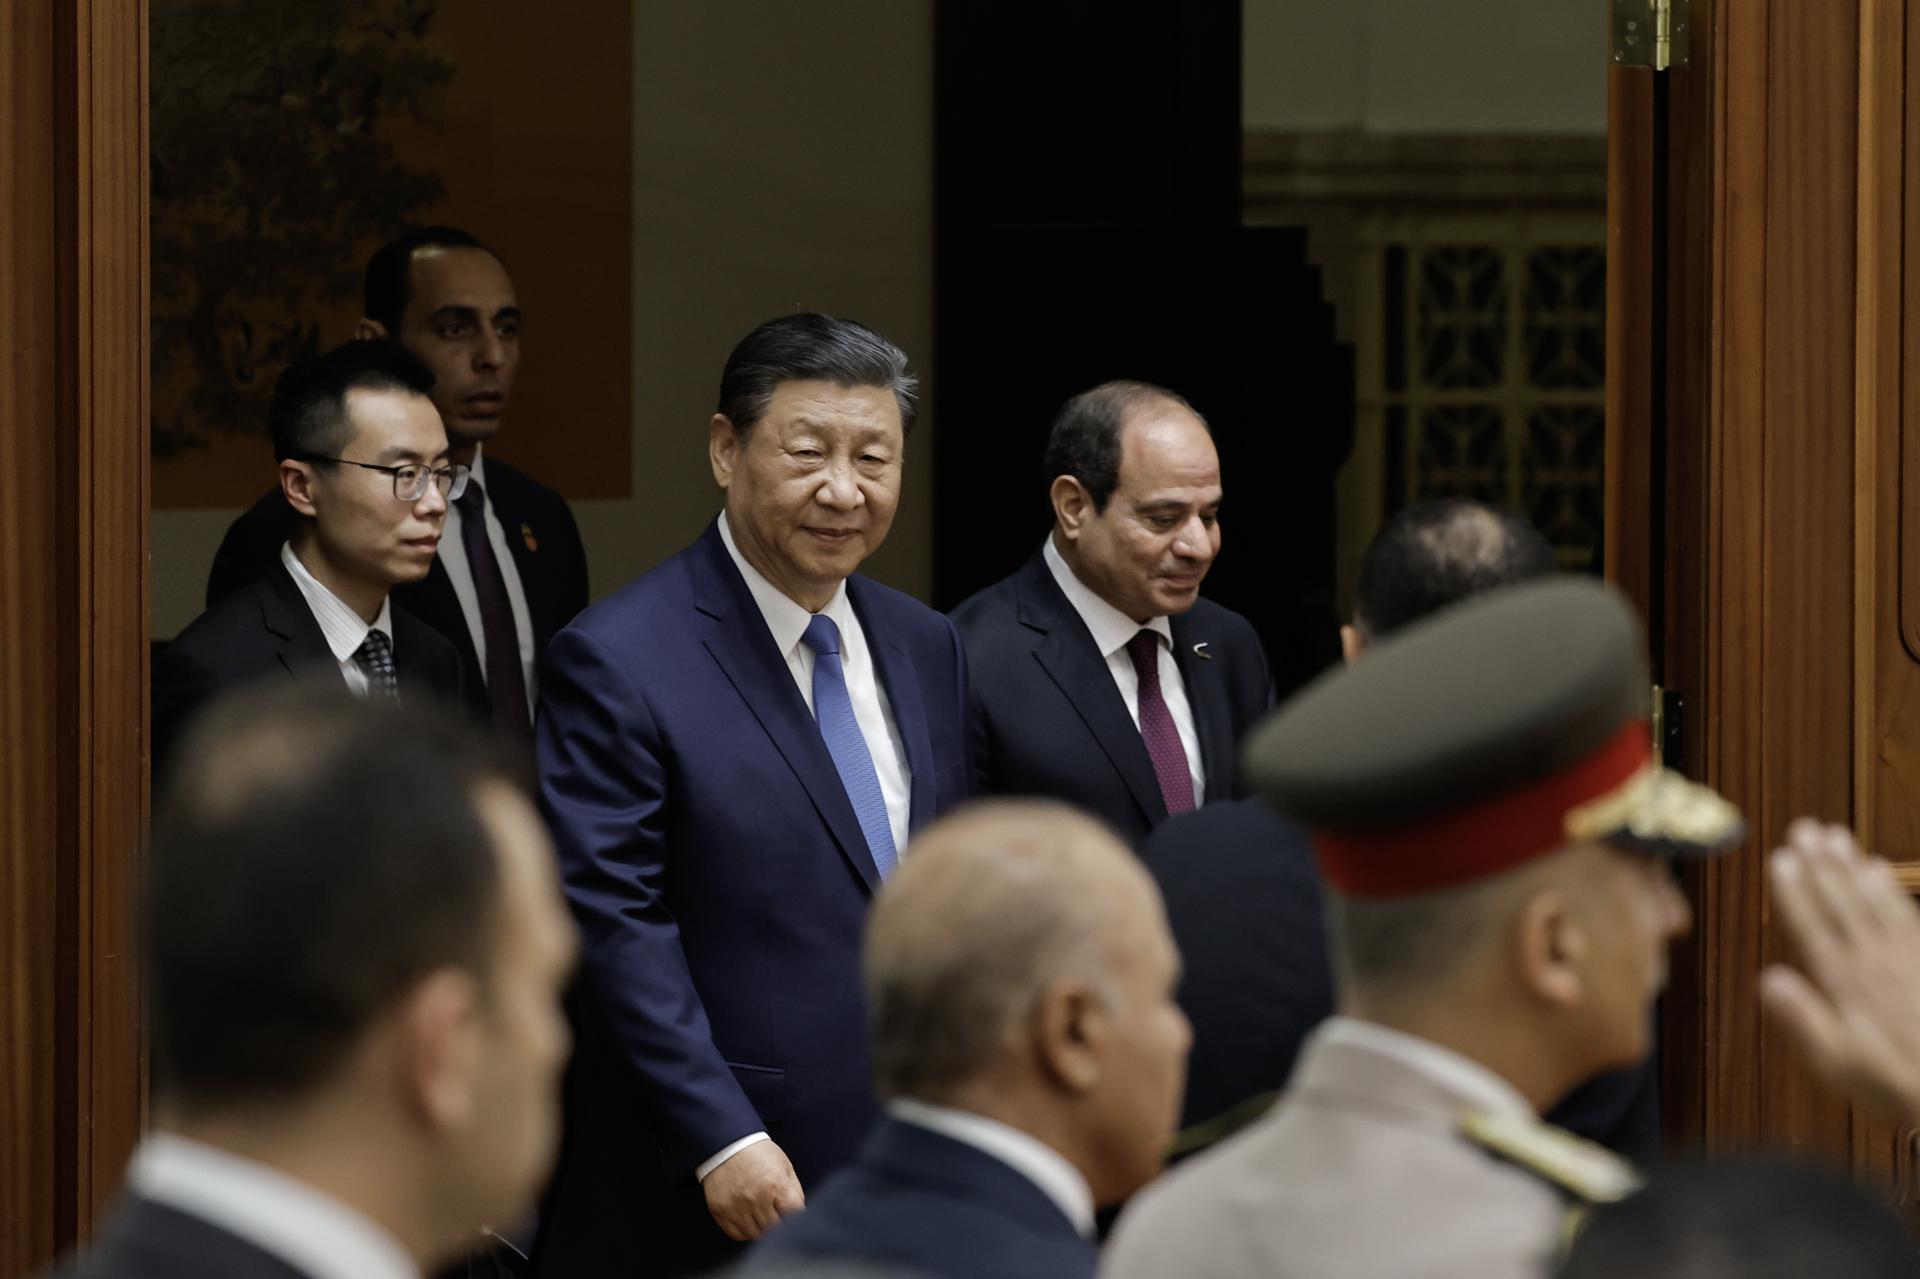 El presidente chino, Xi Jinping, y el presidente egipcio, Abdel Fattah al-Sisi, llegan para asistir a una ceremonia de firma en el Gran Salón del Pueblo en Pekín, China. EFE/EPA/TINGSHU WANG / POOL